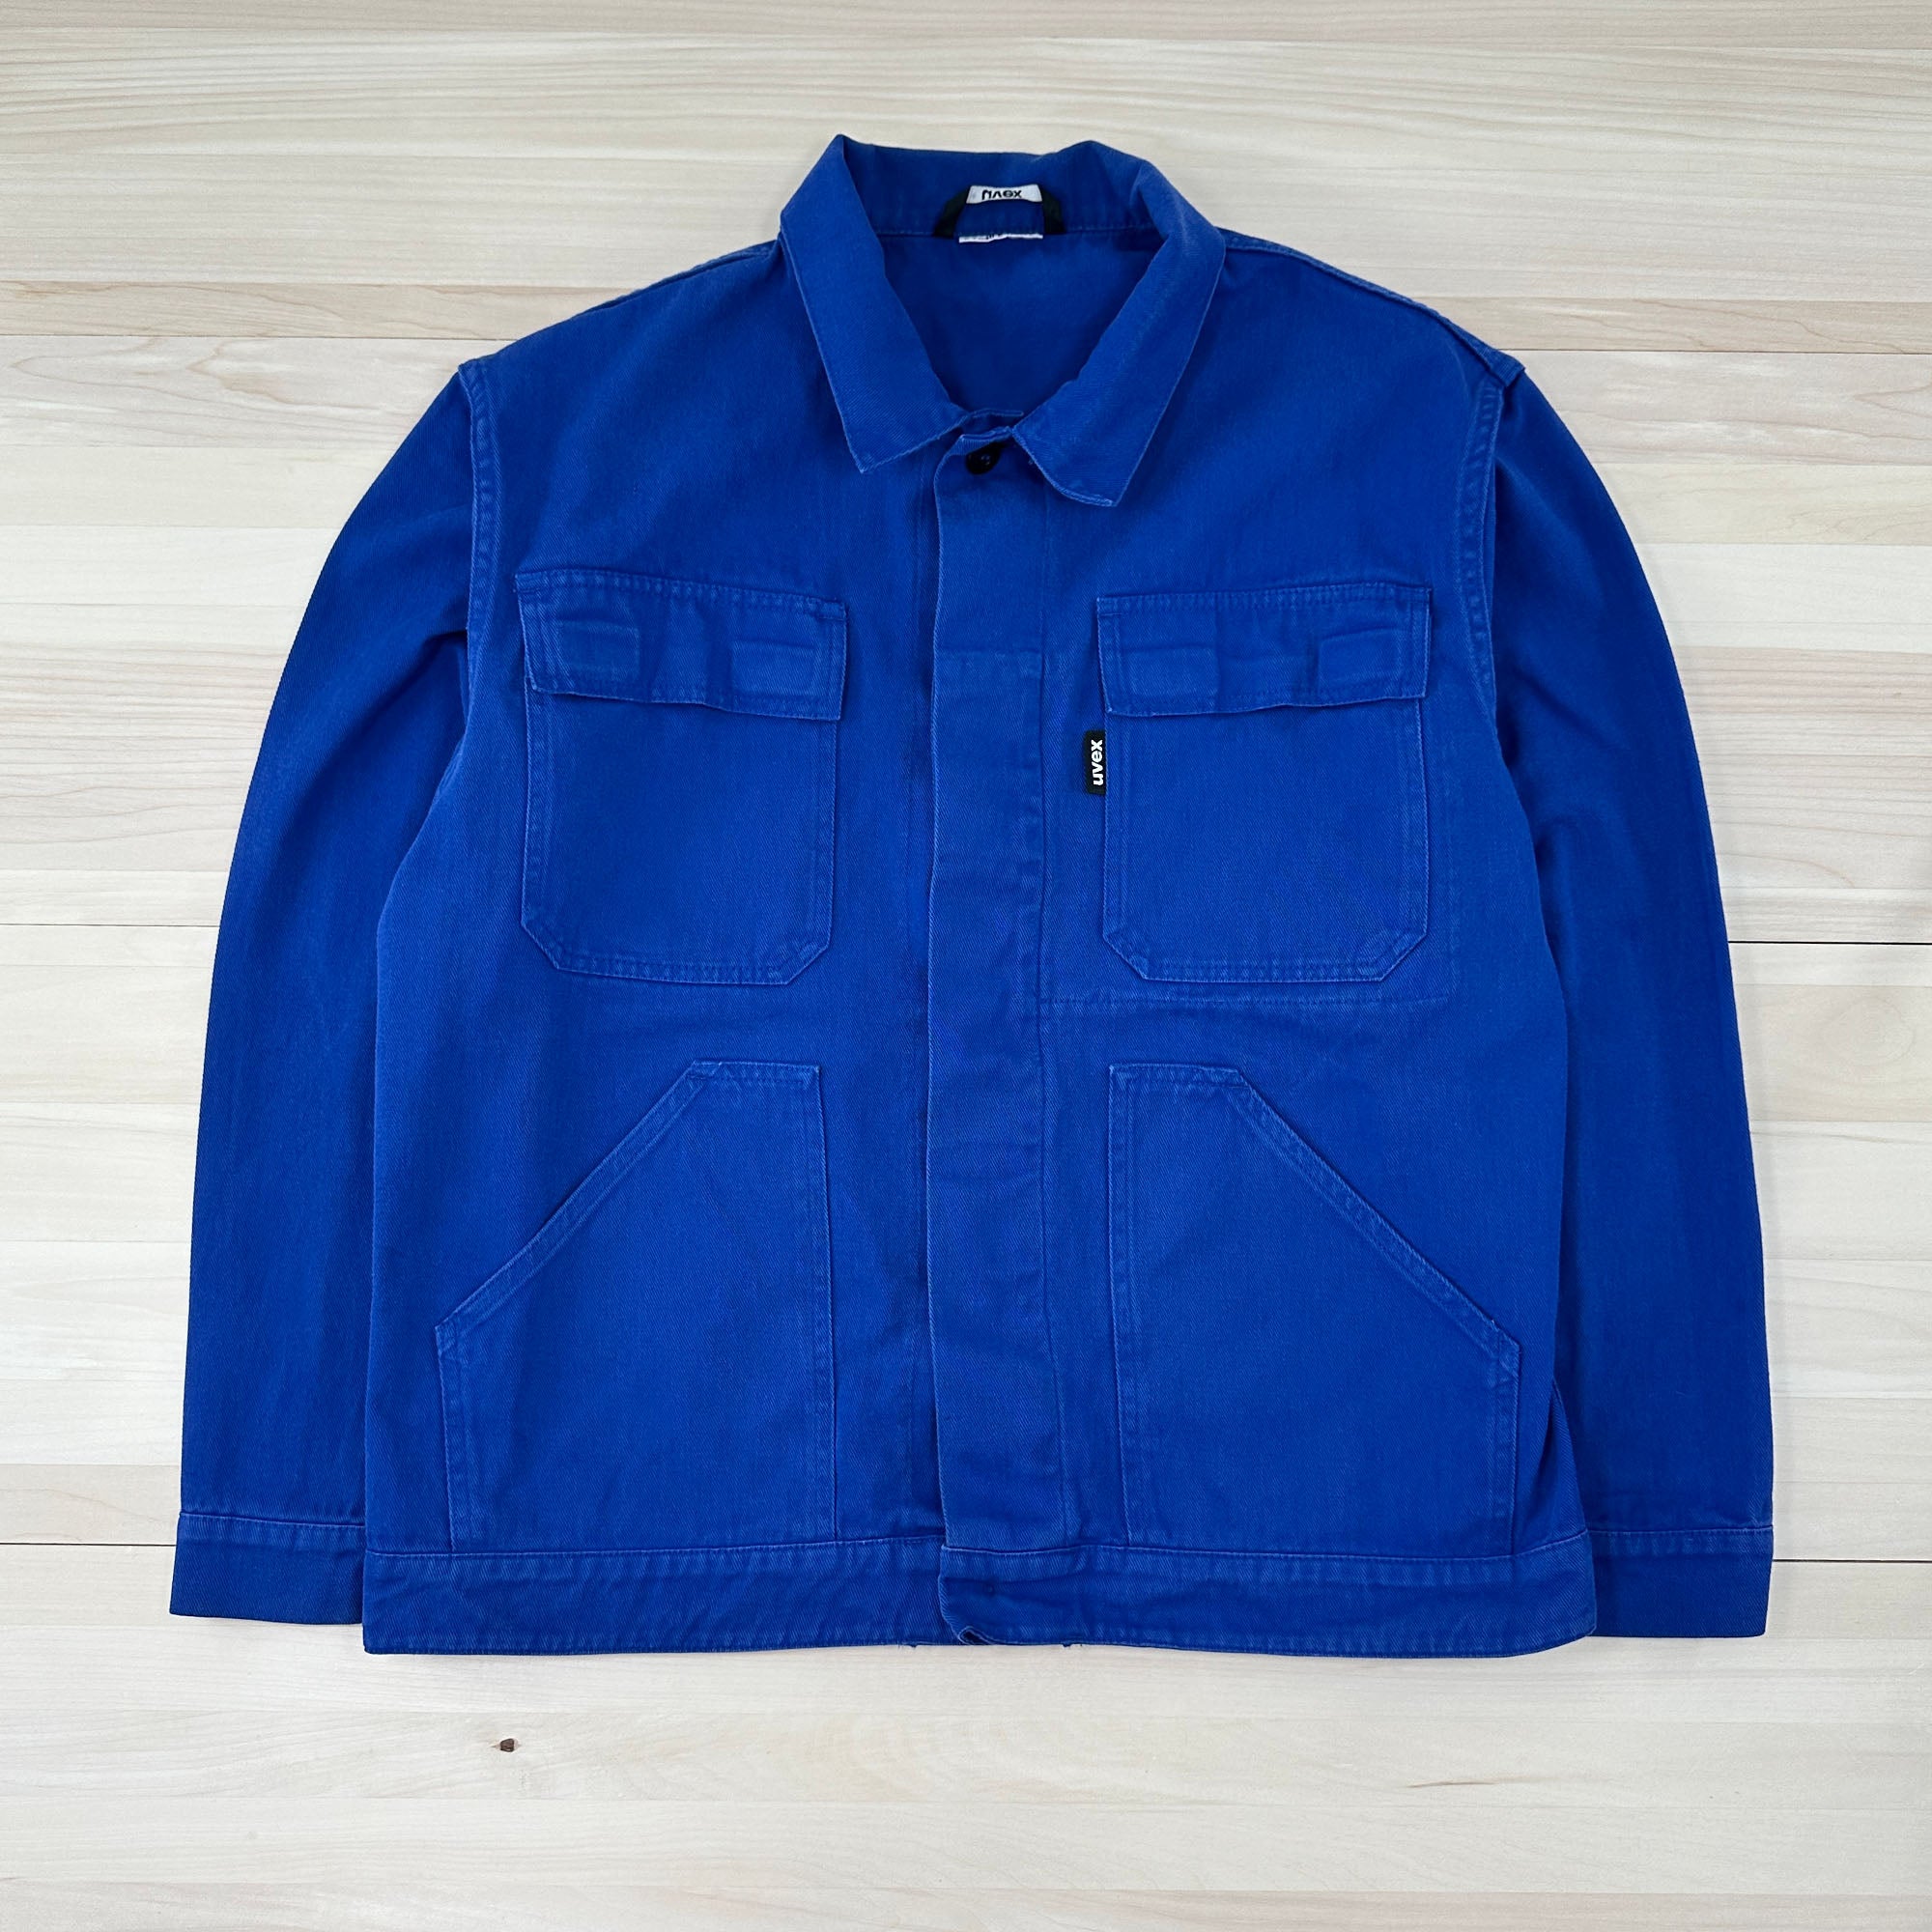 Blue European Work Jacket - Men's Large-2